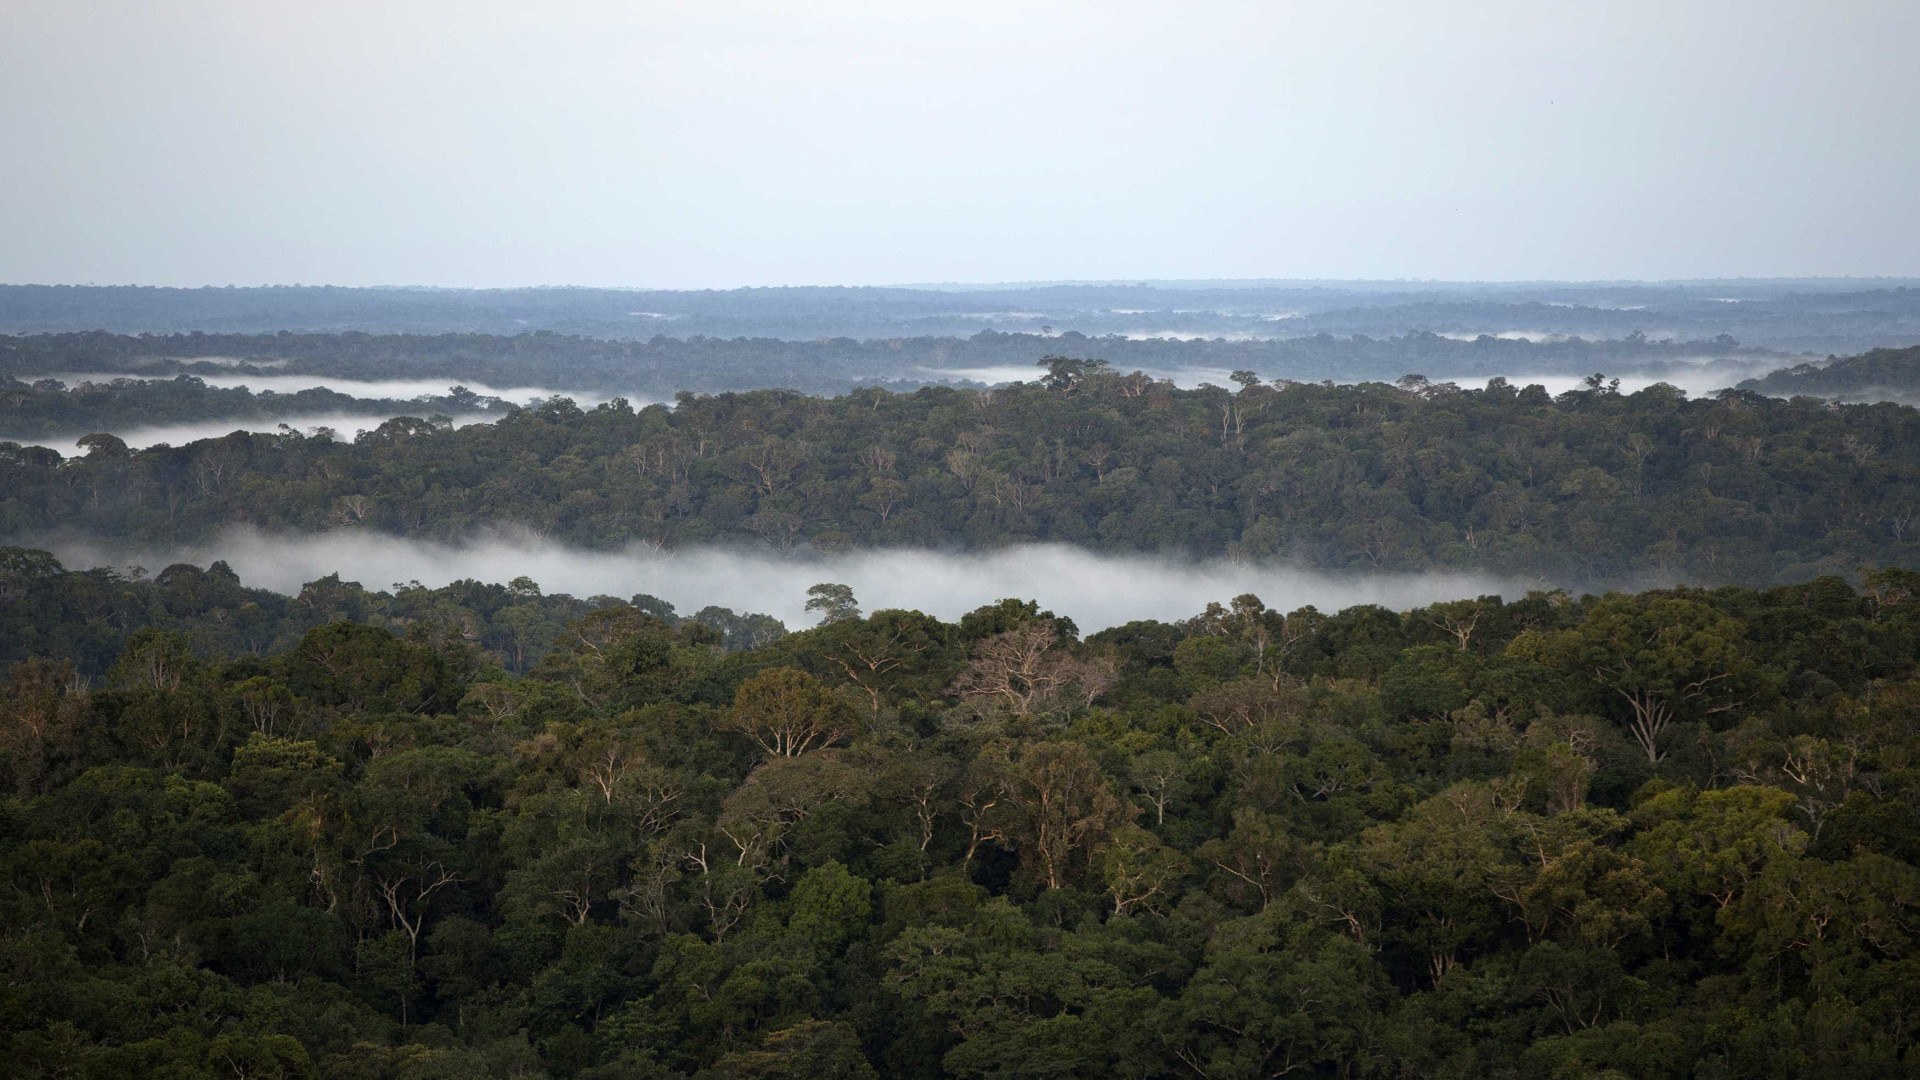 Brasil perdeu 9,5% das florestas entre 2000 e 2014